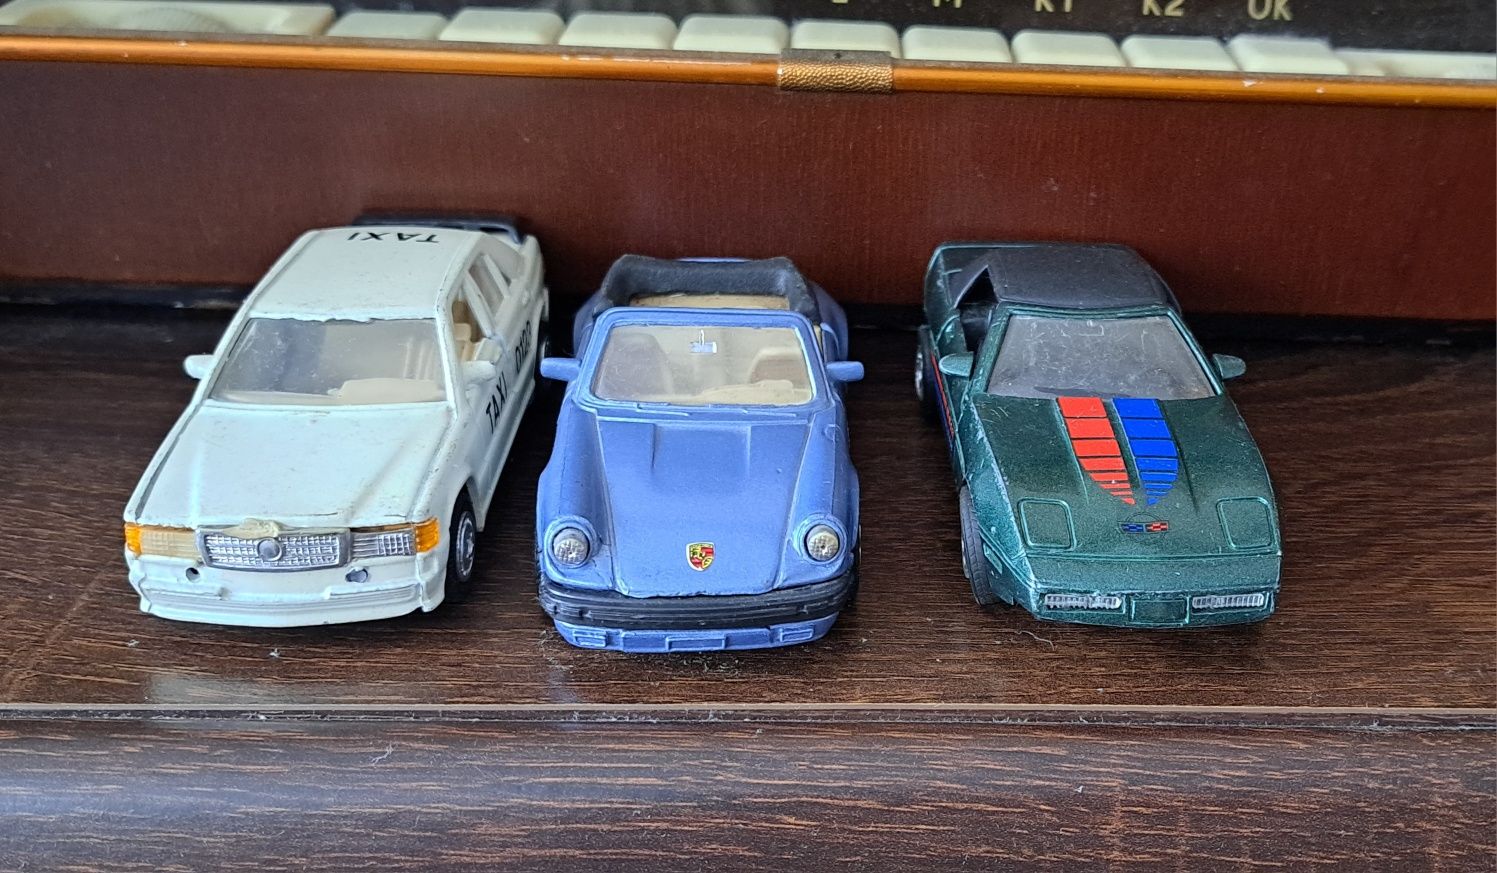 Modele starych samochodów